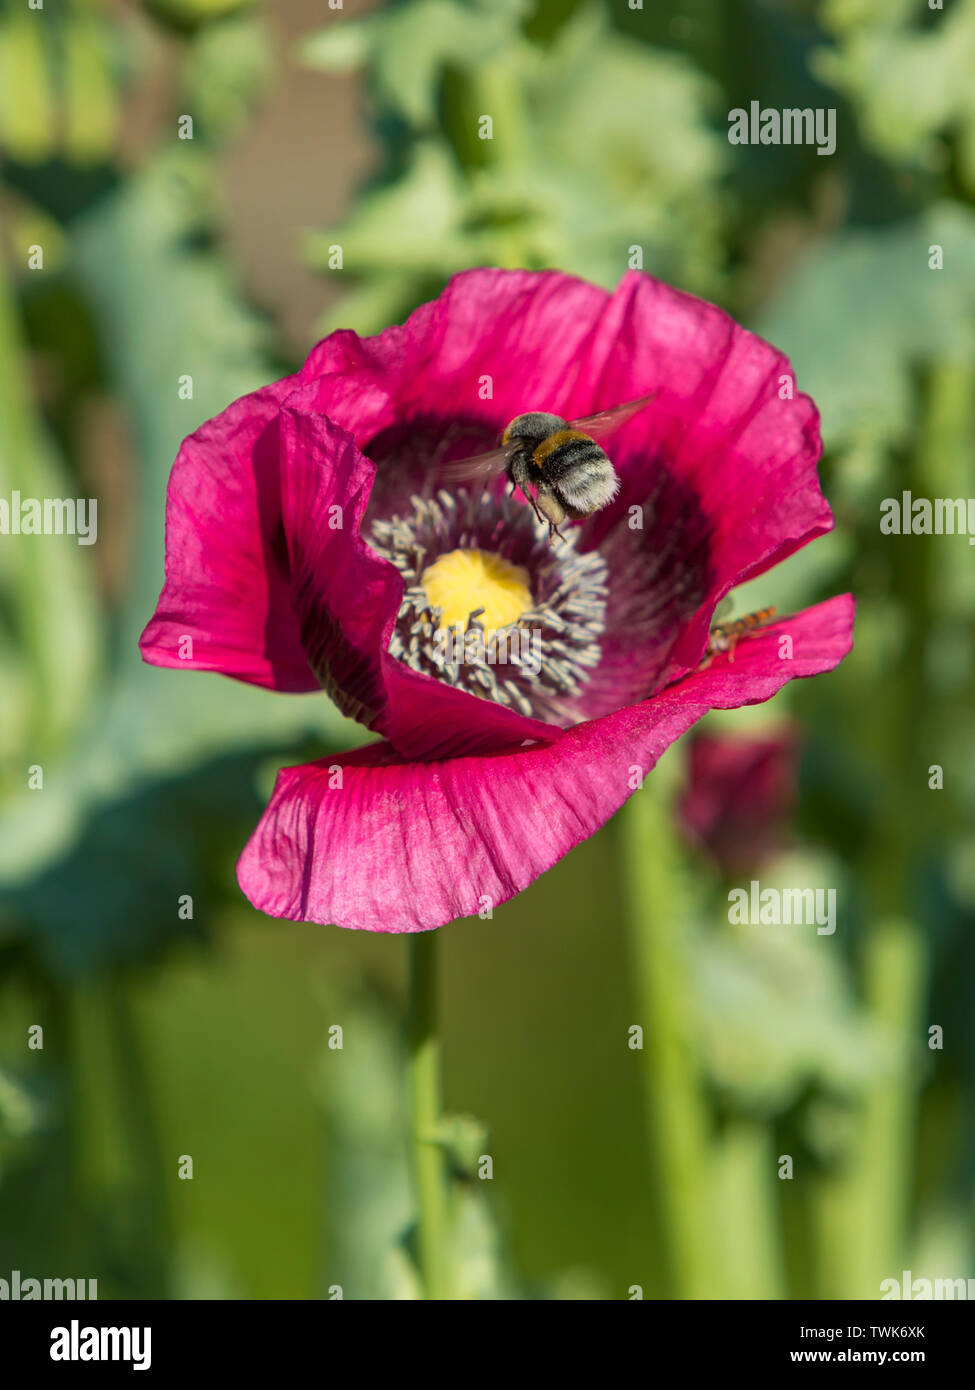 Bumble Bee Annäherung an eine lila Blüte Mohn (Papaver somniferum) Stockfoto